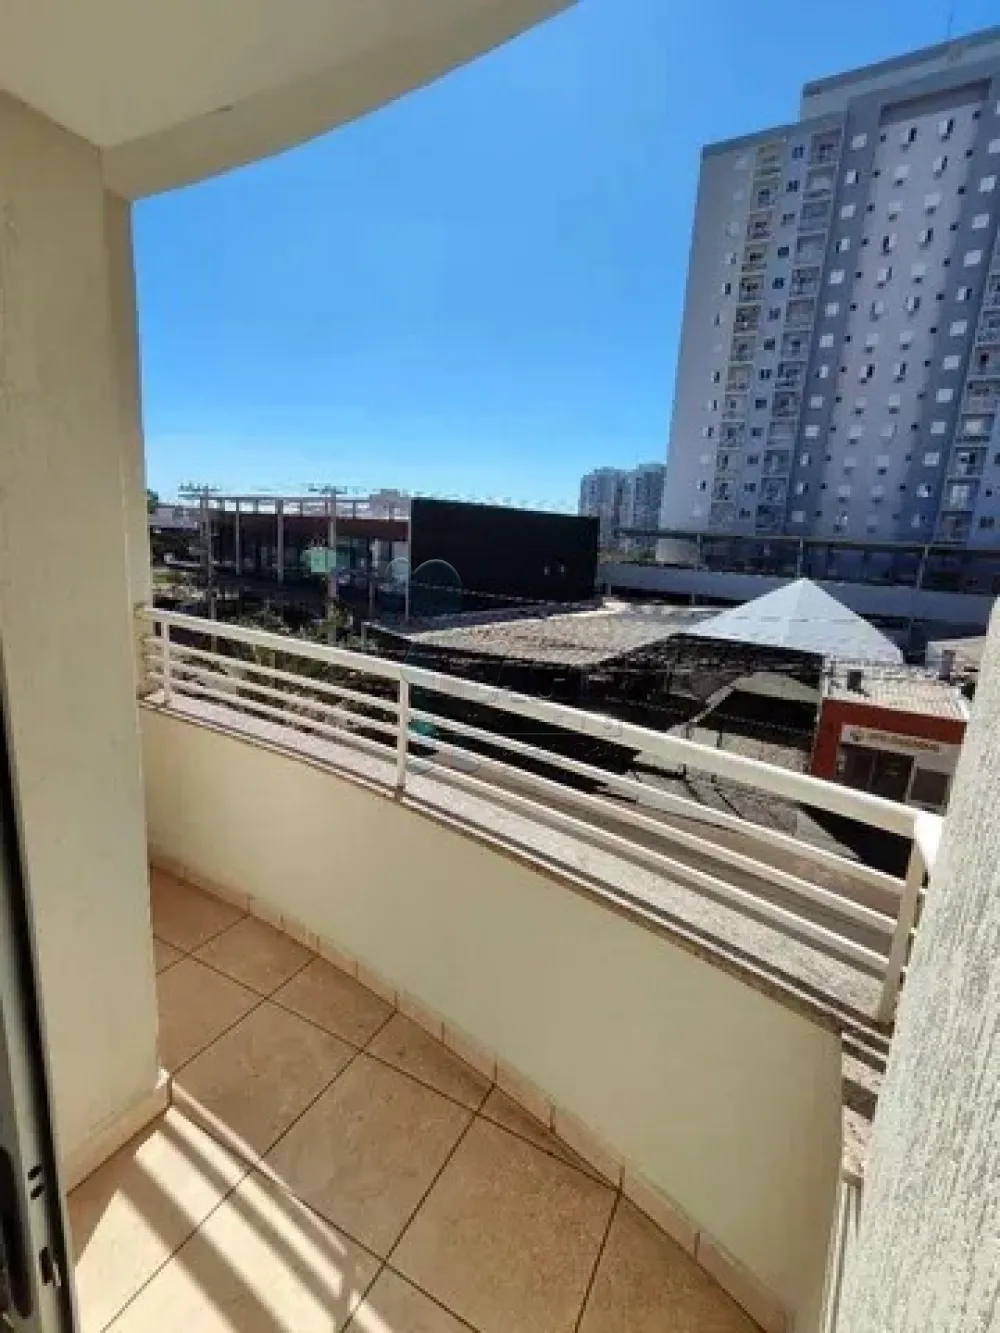 Comprar Apartamentos / Padrão em Ribeirão Preto R$ 212.000,00 - Foto 2